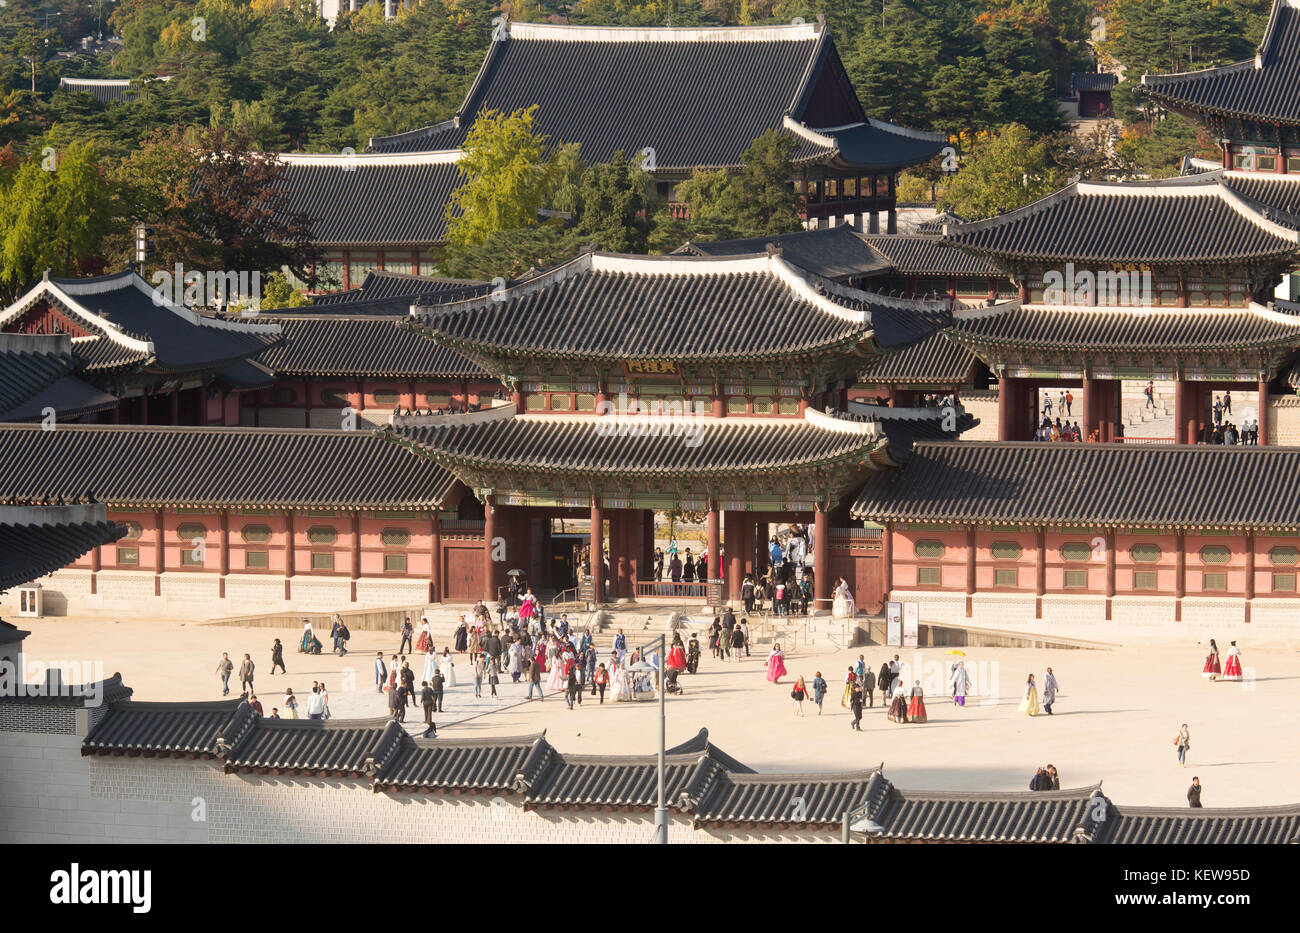 El Palacio Gyeongbokgung, oct 23, 2017 : el Palacio Gyeongbokgung es visto en Seúl, Corea del Sur. También conocido como el Palacio Gyeongbokgung o palacio Gyeongbok, fue construido en 1395 y fue el principal palacio real de la dinastía Joseon (1392 - 1910). Crédito: Lee Jae-won/aflo/alamy live news Foto de stock